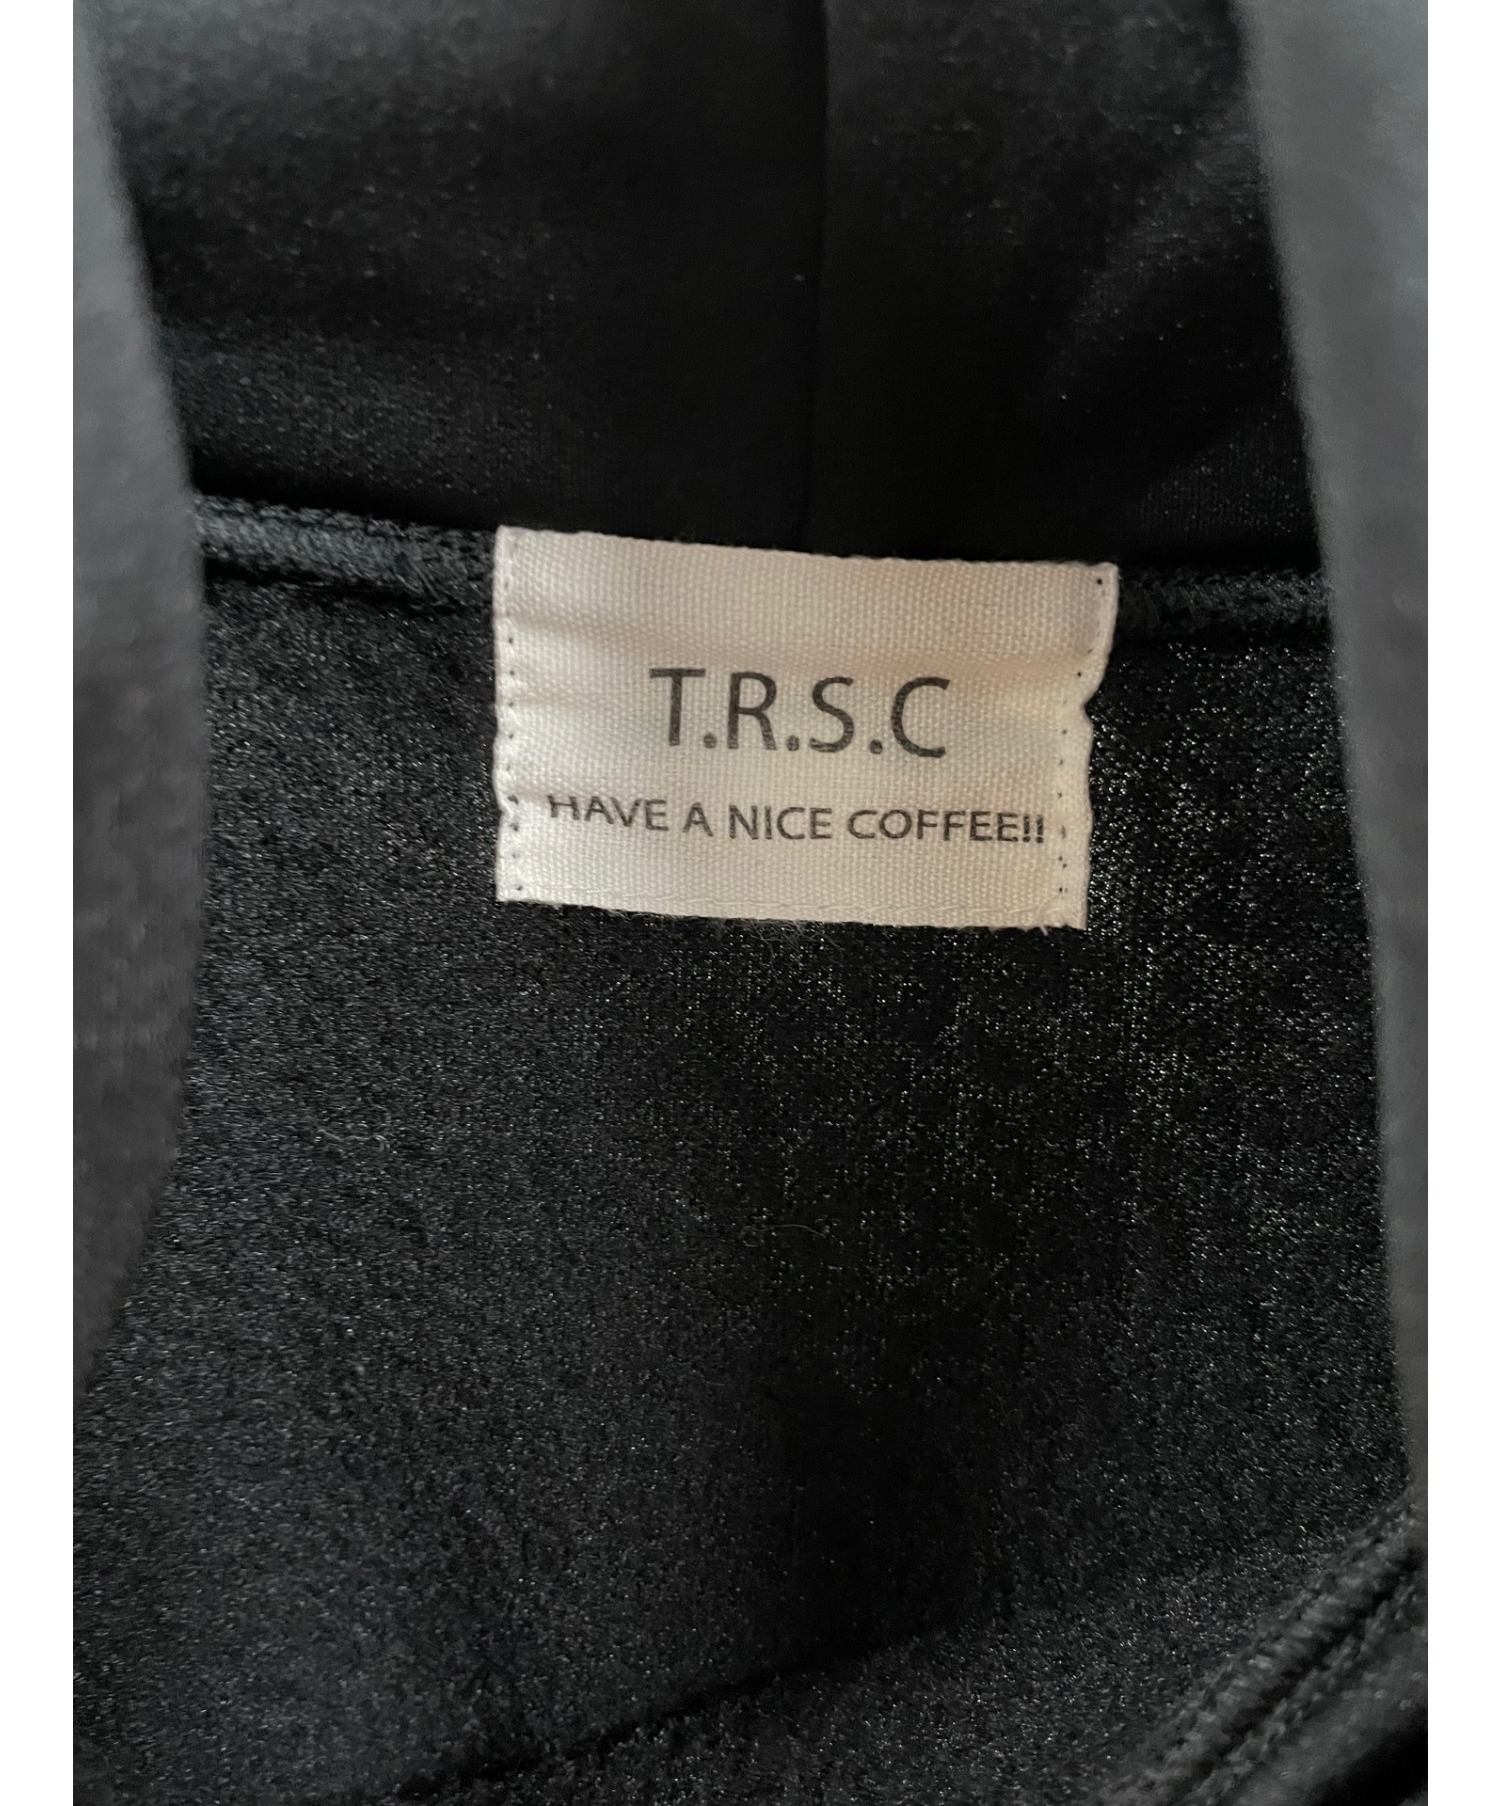 T.R.S.C (ザ ライジング サン コーヒー) プルオーバーパーカー ブラック サイズ:不明